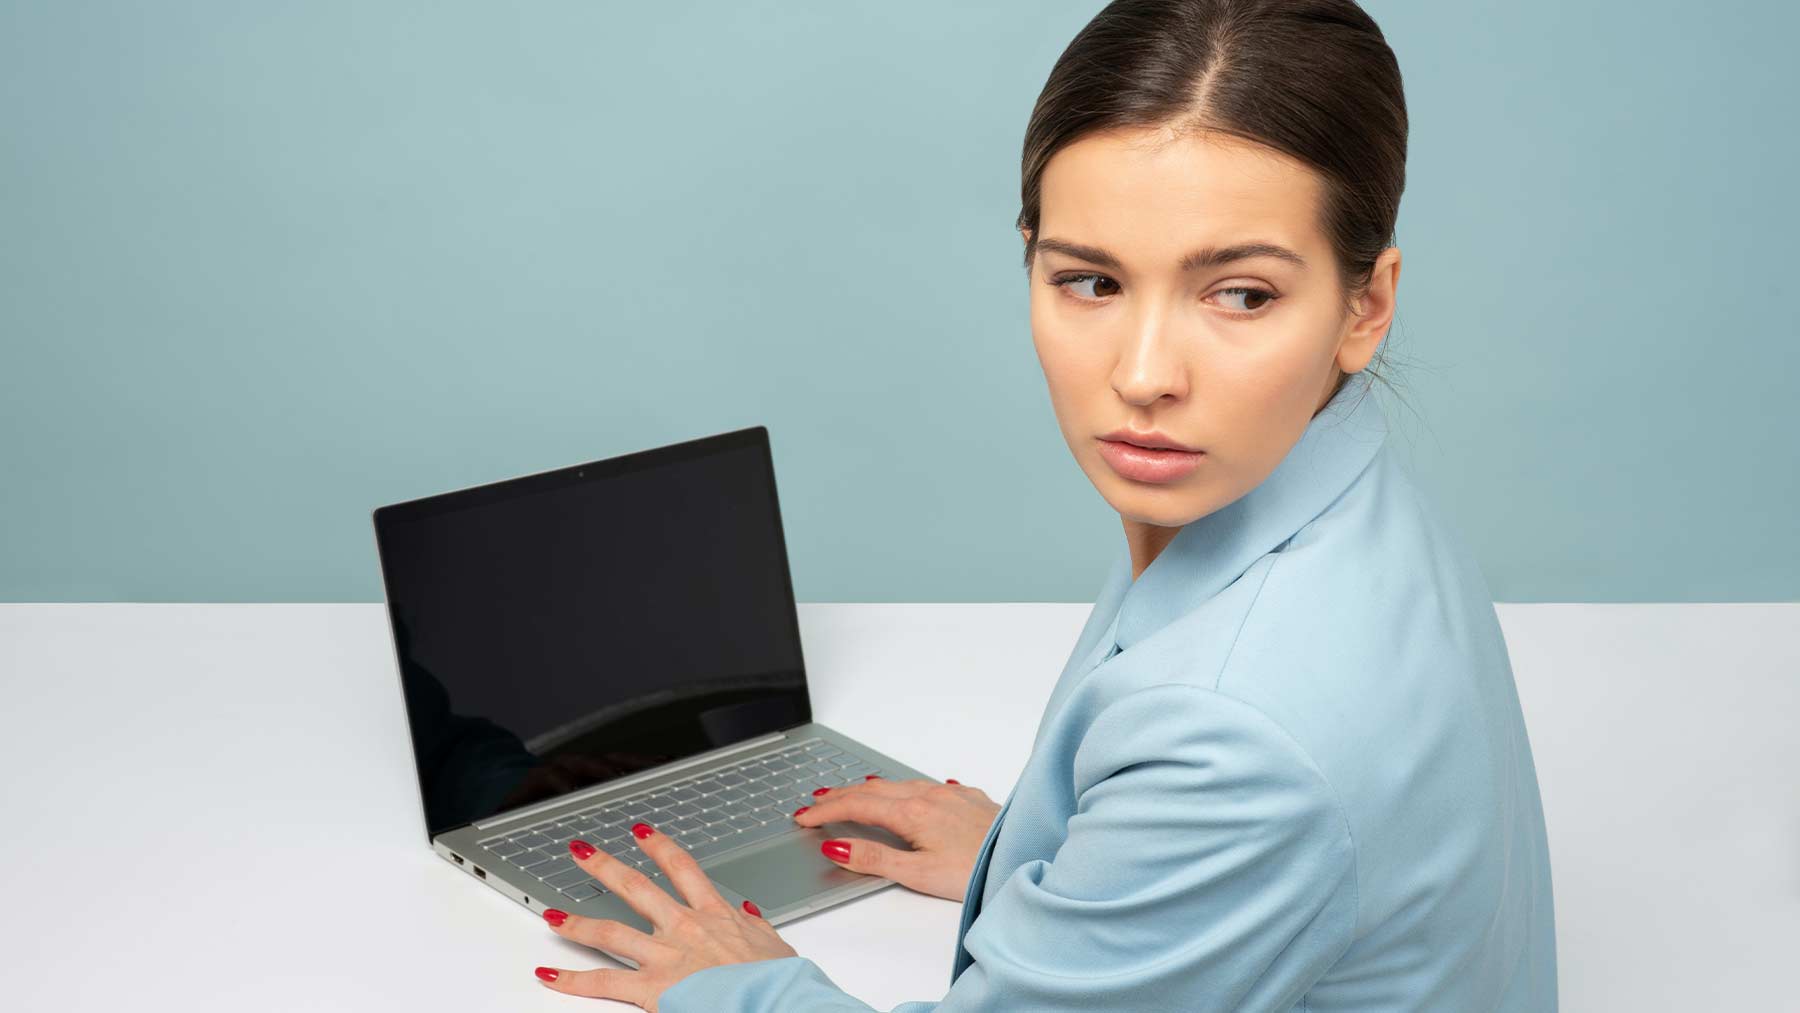 En kvinna som sitter vid en dator tittar bakåt och ser orolig ut.